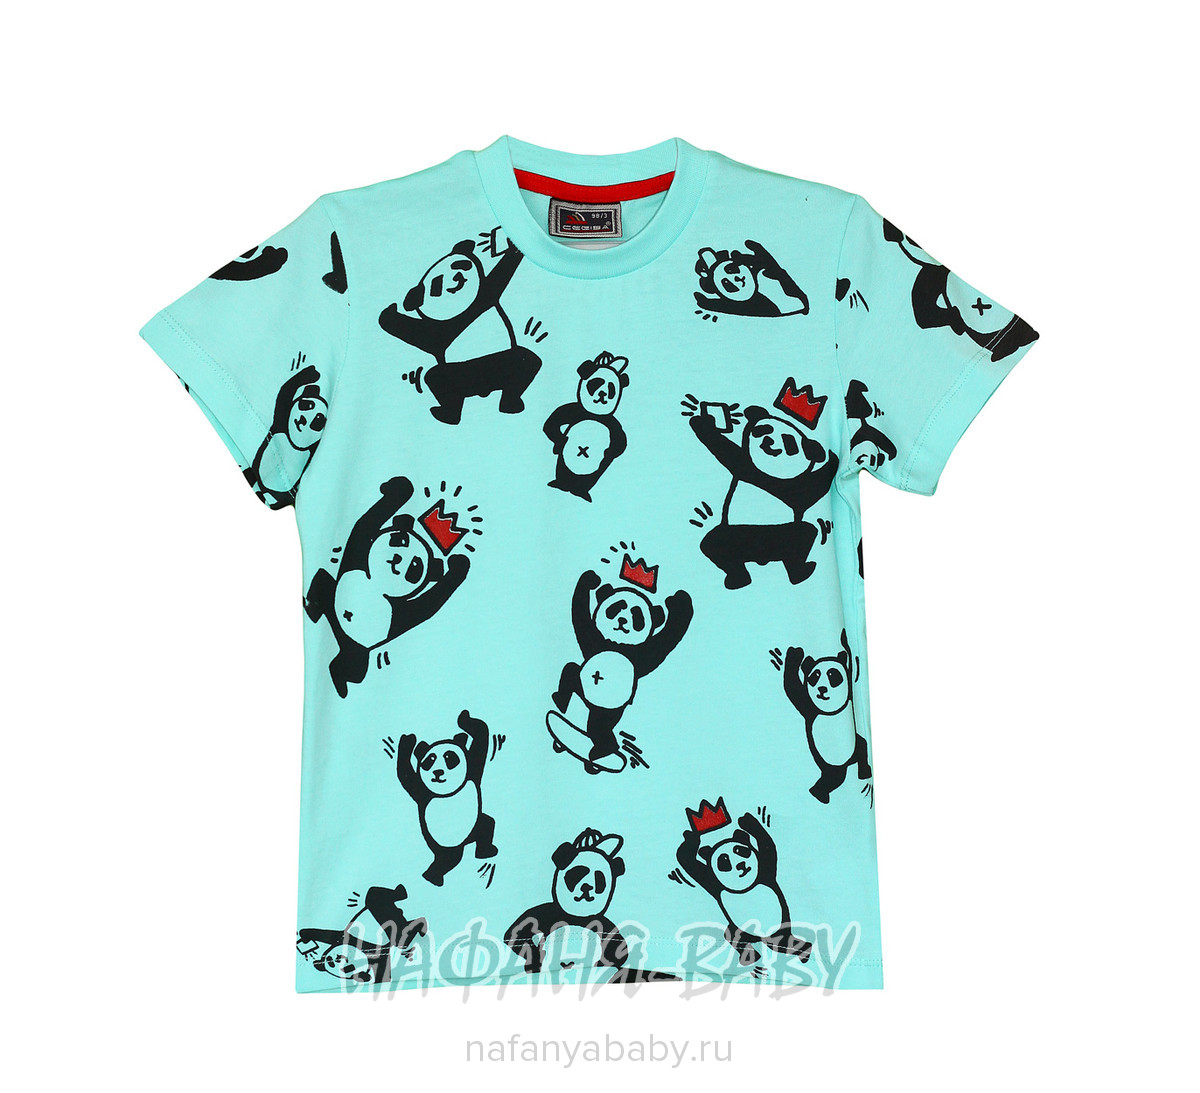 Детская футболка CEGISA, купить в интернет магазине Нафаня. арт: 9437.